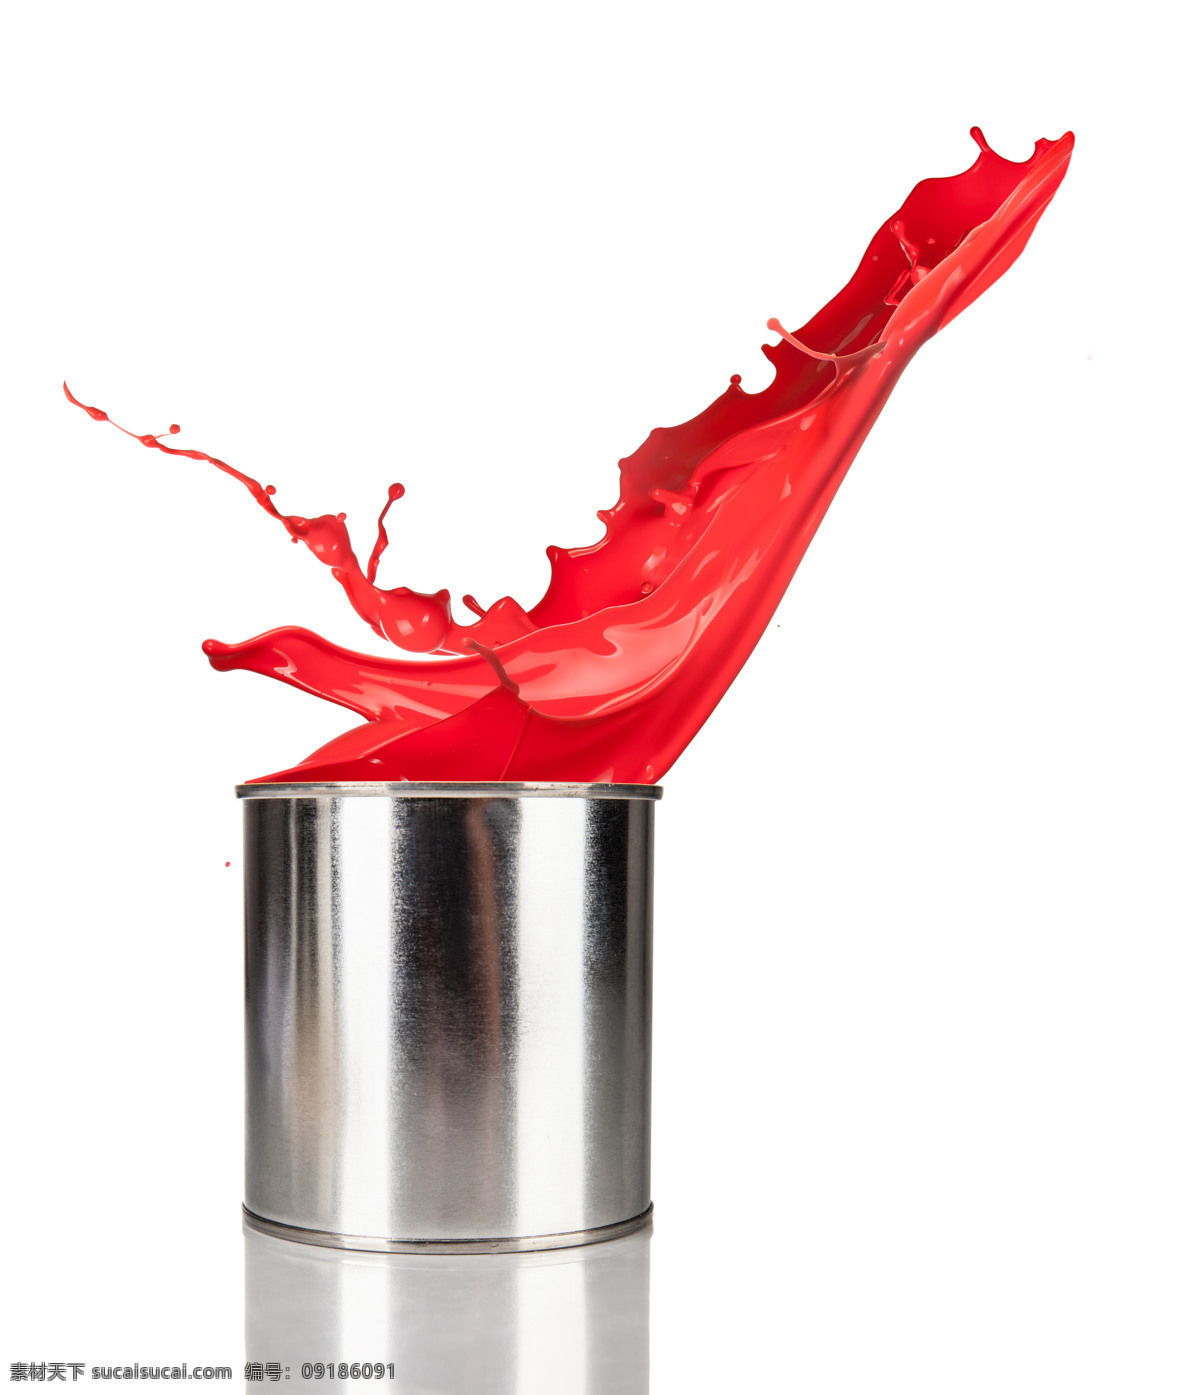 油漆桶 里 喷溅 红色 油漆 涂料 其他类别 生活百科 白色